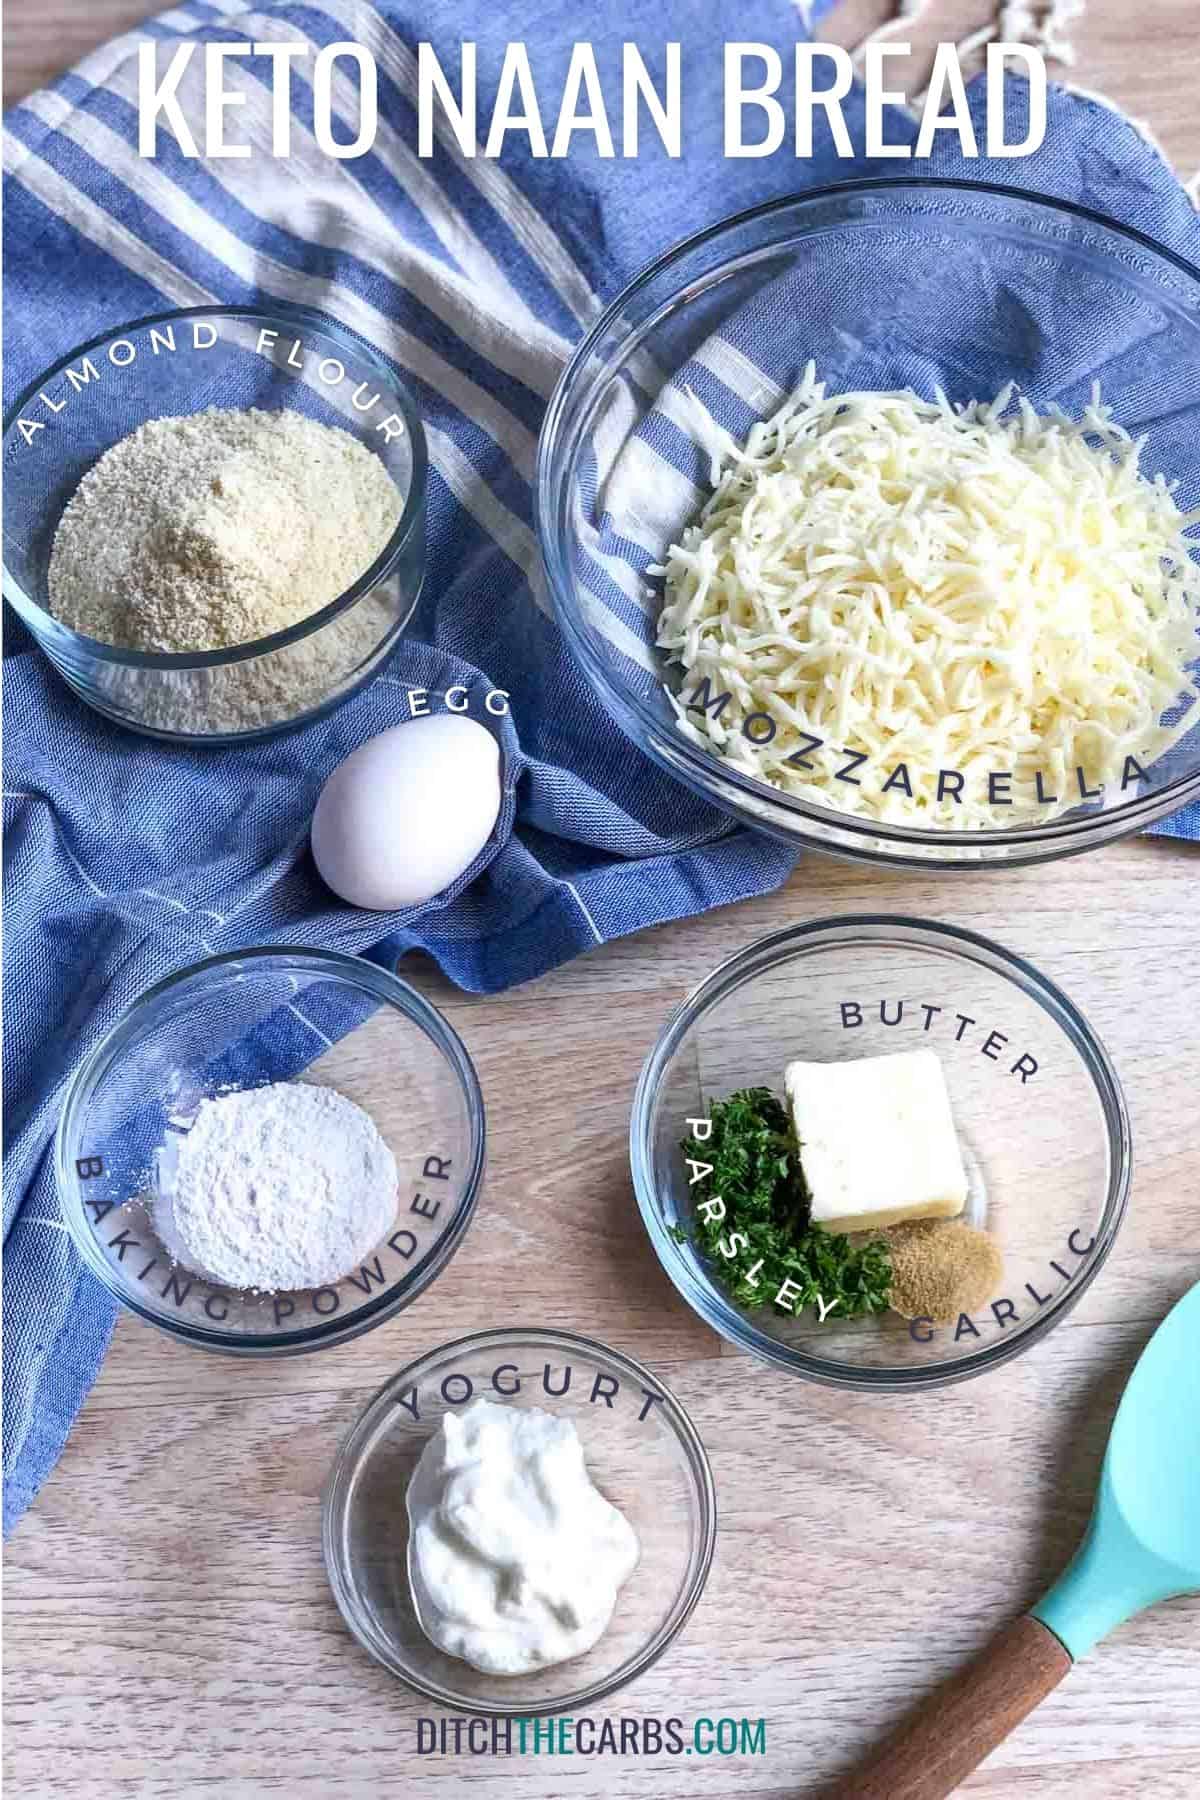 Ingredientes para Keto Naan: harina de almendras, mozzarella, huevo, mantequilla, perejil, ajo, yogur y levadura en polvo.